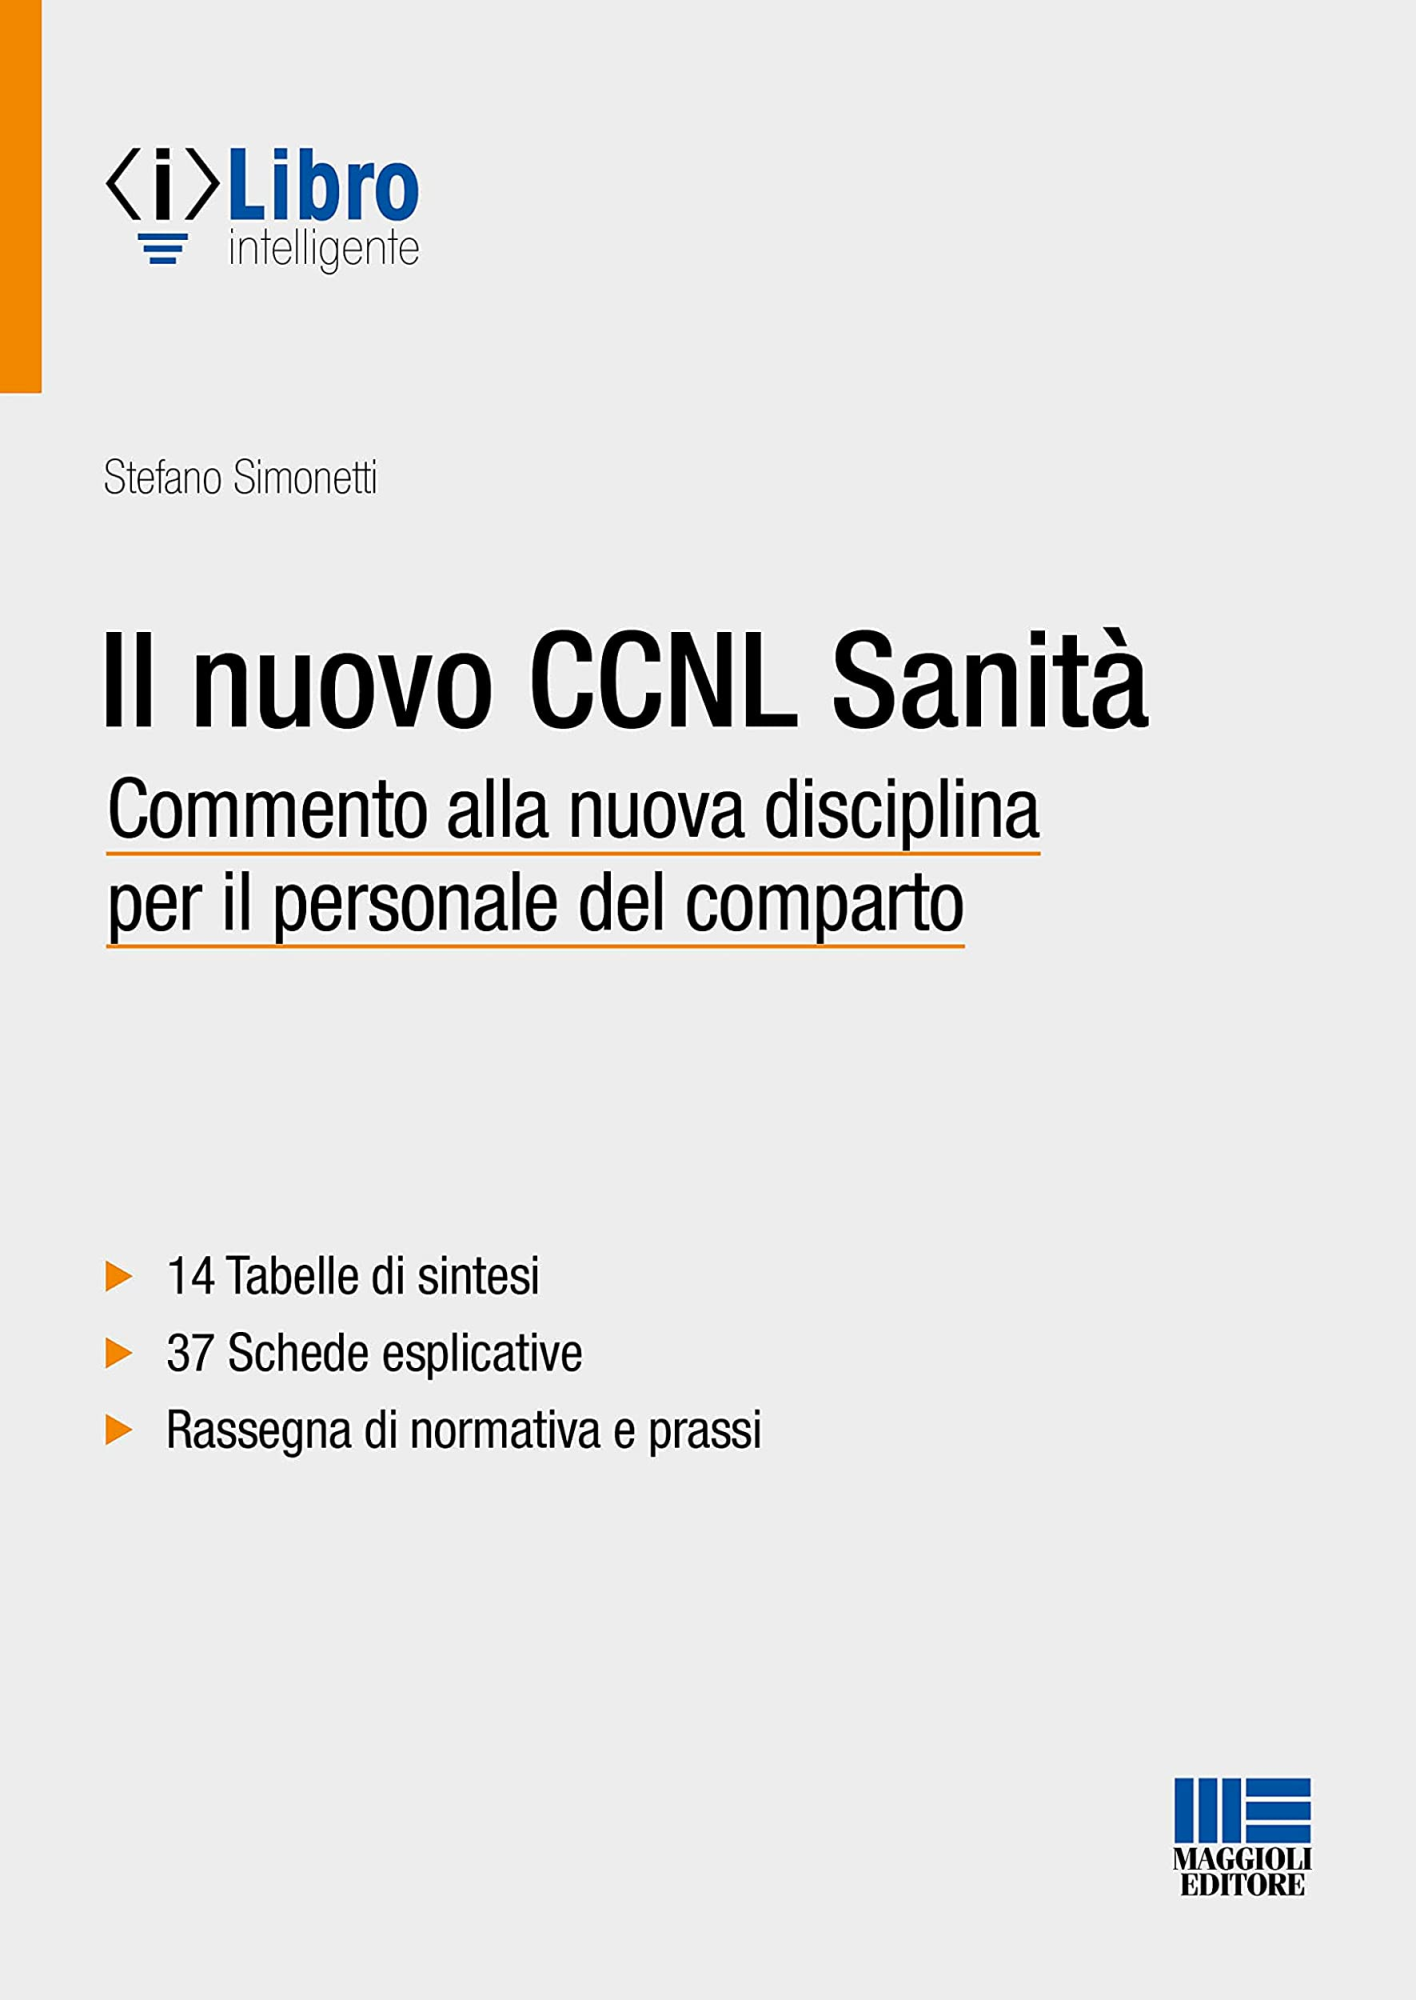 Libri Stefano Simonetti - Il Nuovo CCNL Sanita NUOVO SIGILLATO, EDIZIONE DEL 15/12/2022 SUBITO DISPONIBILE